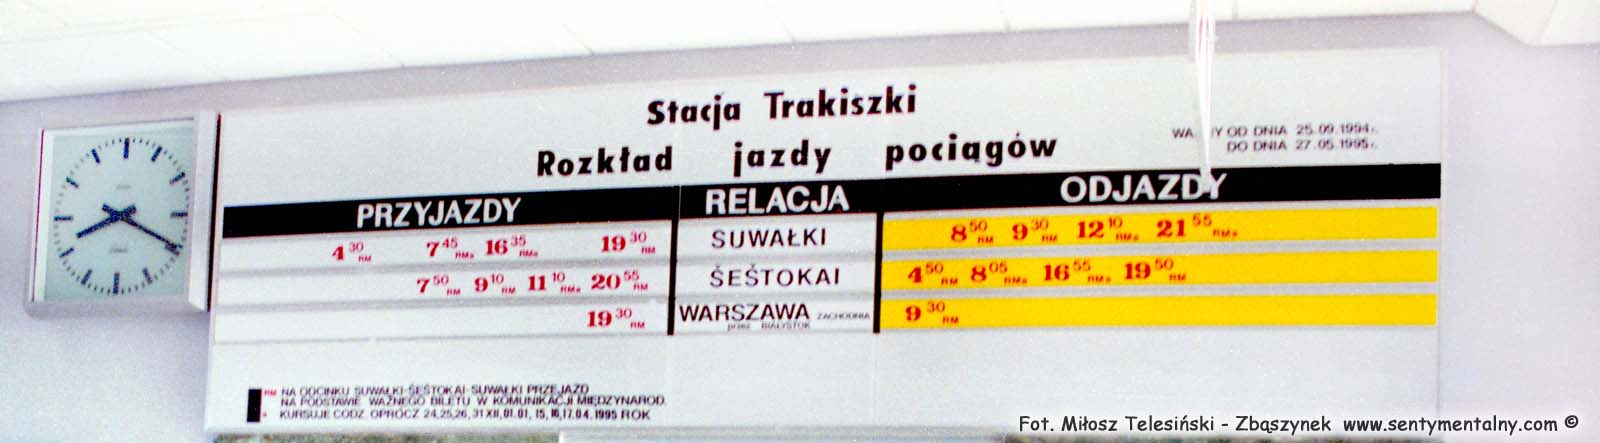 Rozkład jazdy na poczekalni stacji Trakiszki, obowiązujący od dnia 25.09.1994 do 27.05.1995. Zdjęcie wykonane podczas osatniej wyprawy w to miejsce, w dniu 23.02.1995 roku.